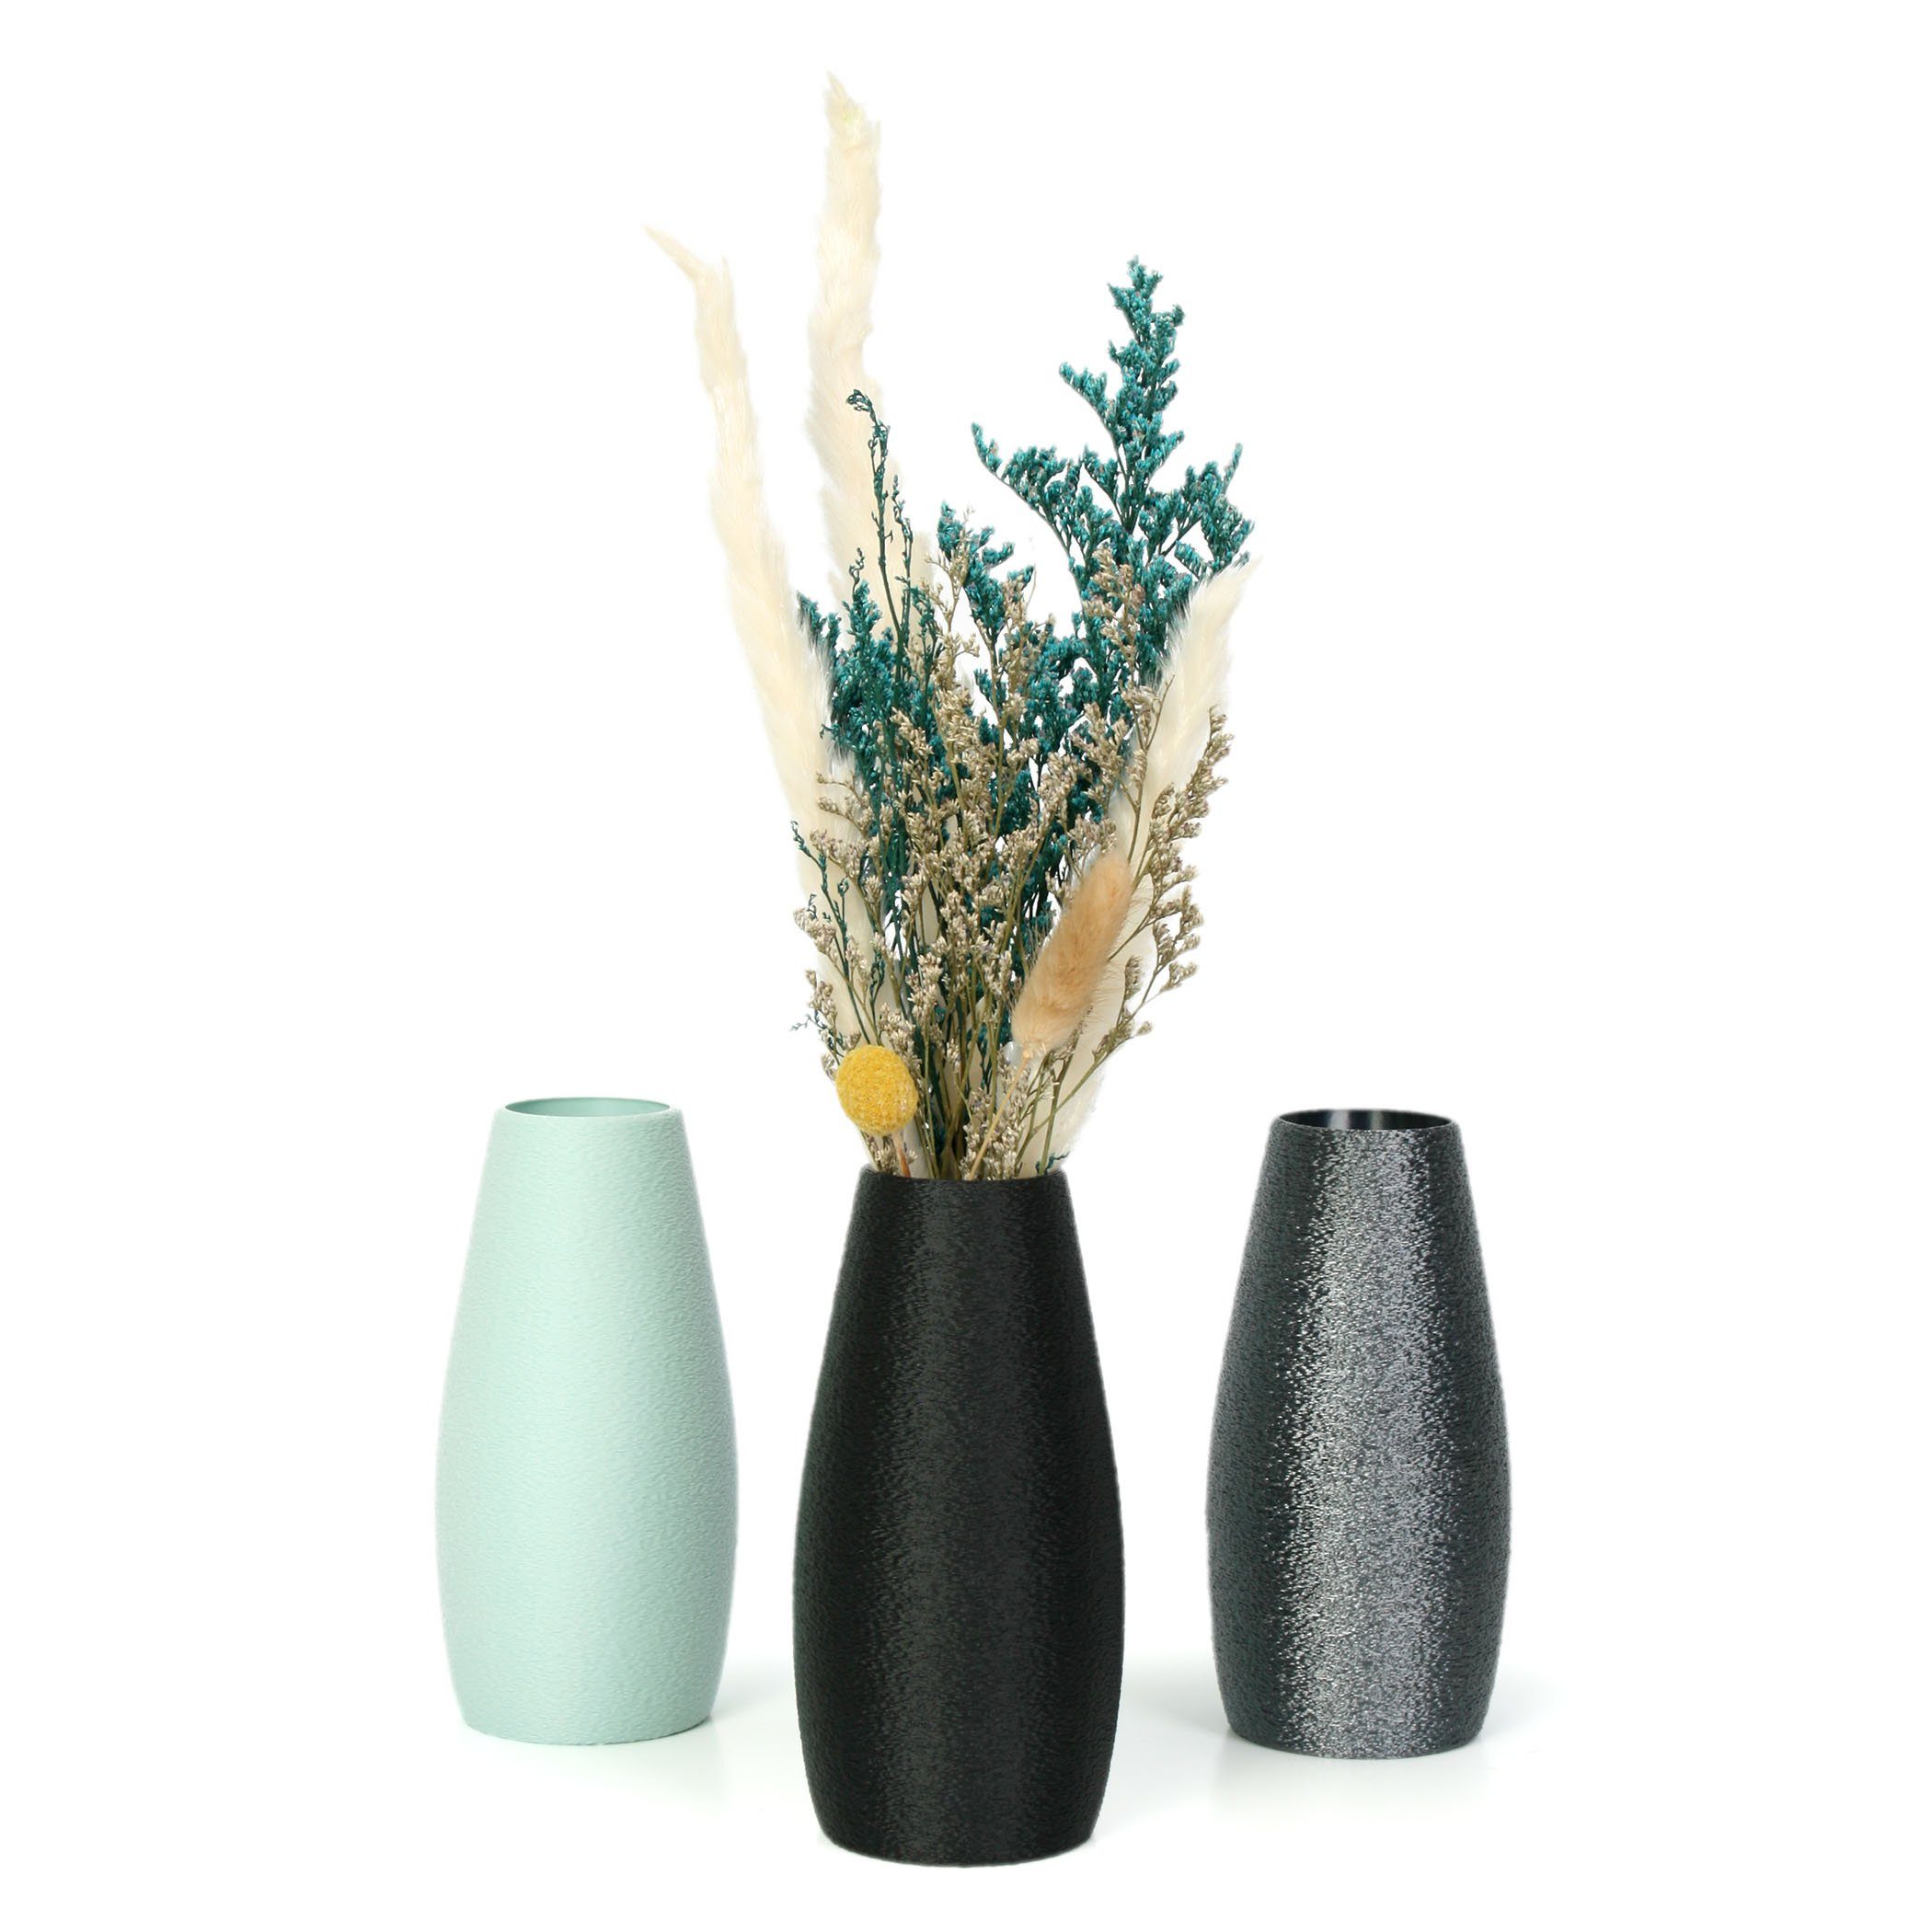 Designer Feder Vase Dekorative Blumenvase Rohstoffen; White aus Dekovase nachwachsenden bruchsicher aus wasserdicht Bio-Kunststoff, & – Kreative